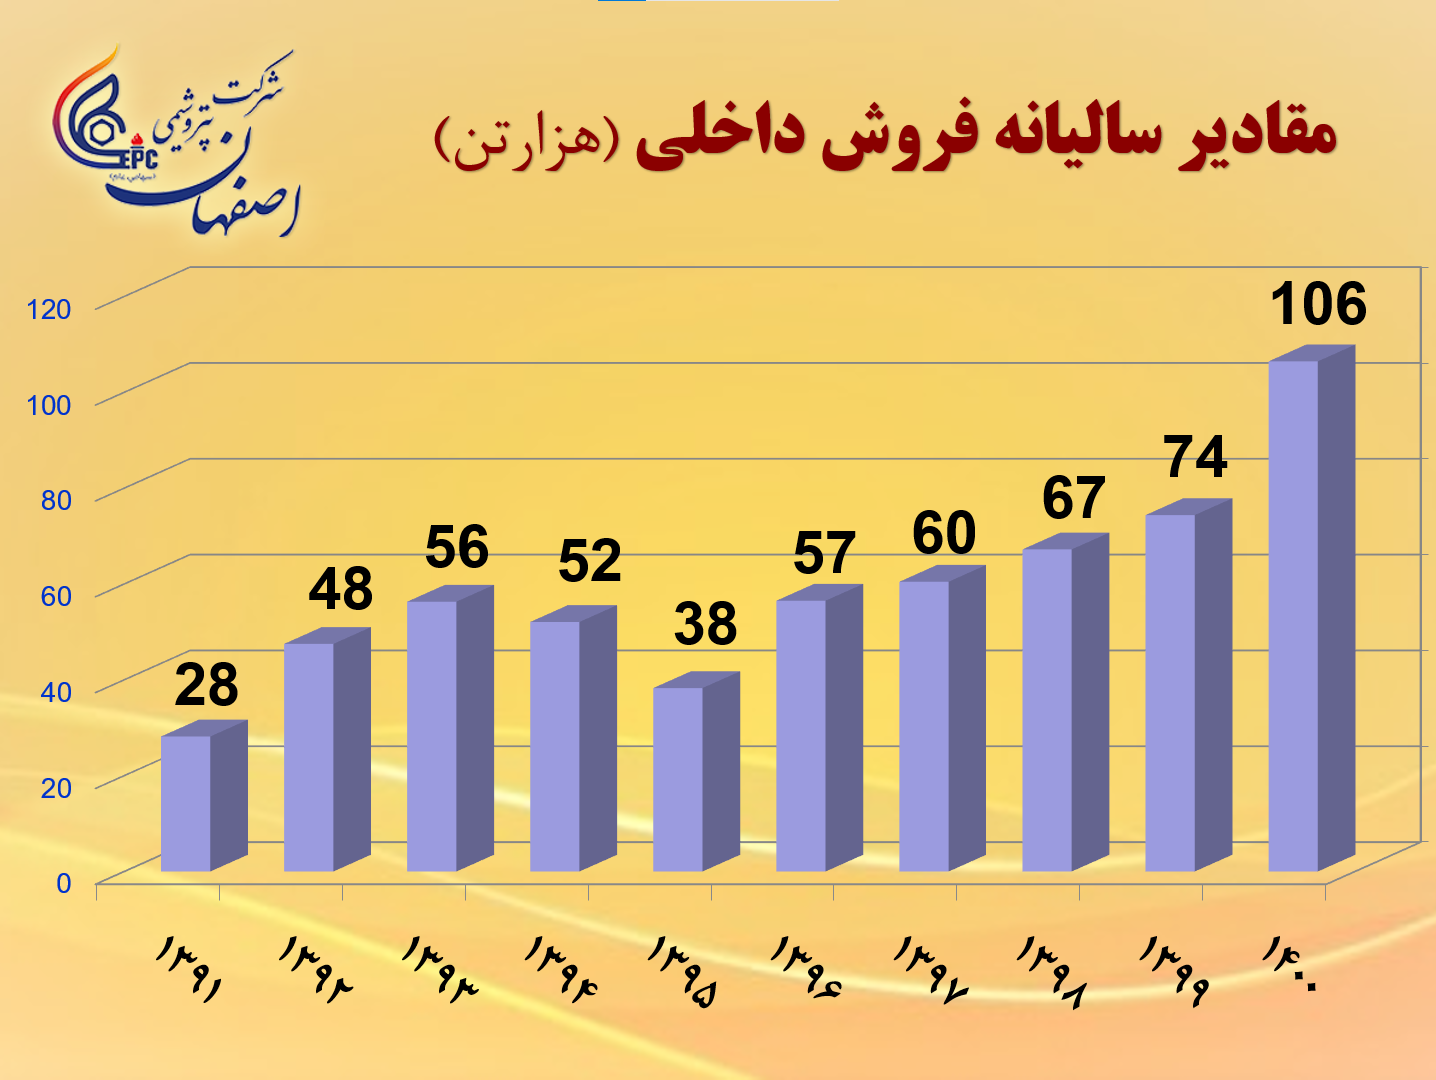 دلیل کاهش 13 درصدی سود پایه هر سهم پتروشیمی اصفهان در 9 ماهه نخست سال 1401 نسبت به دوره مشابه سال قبل